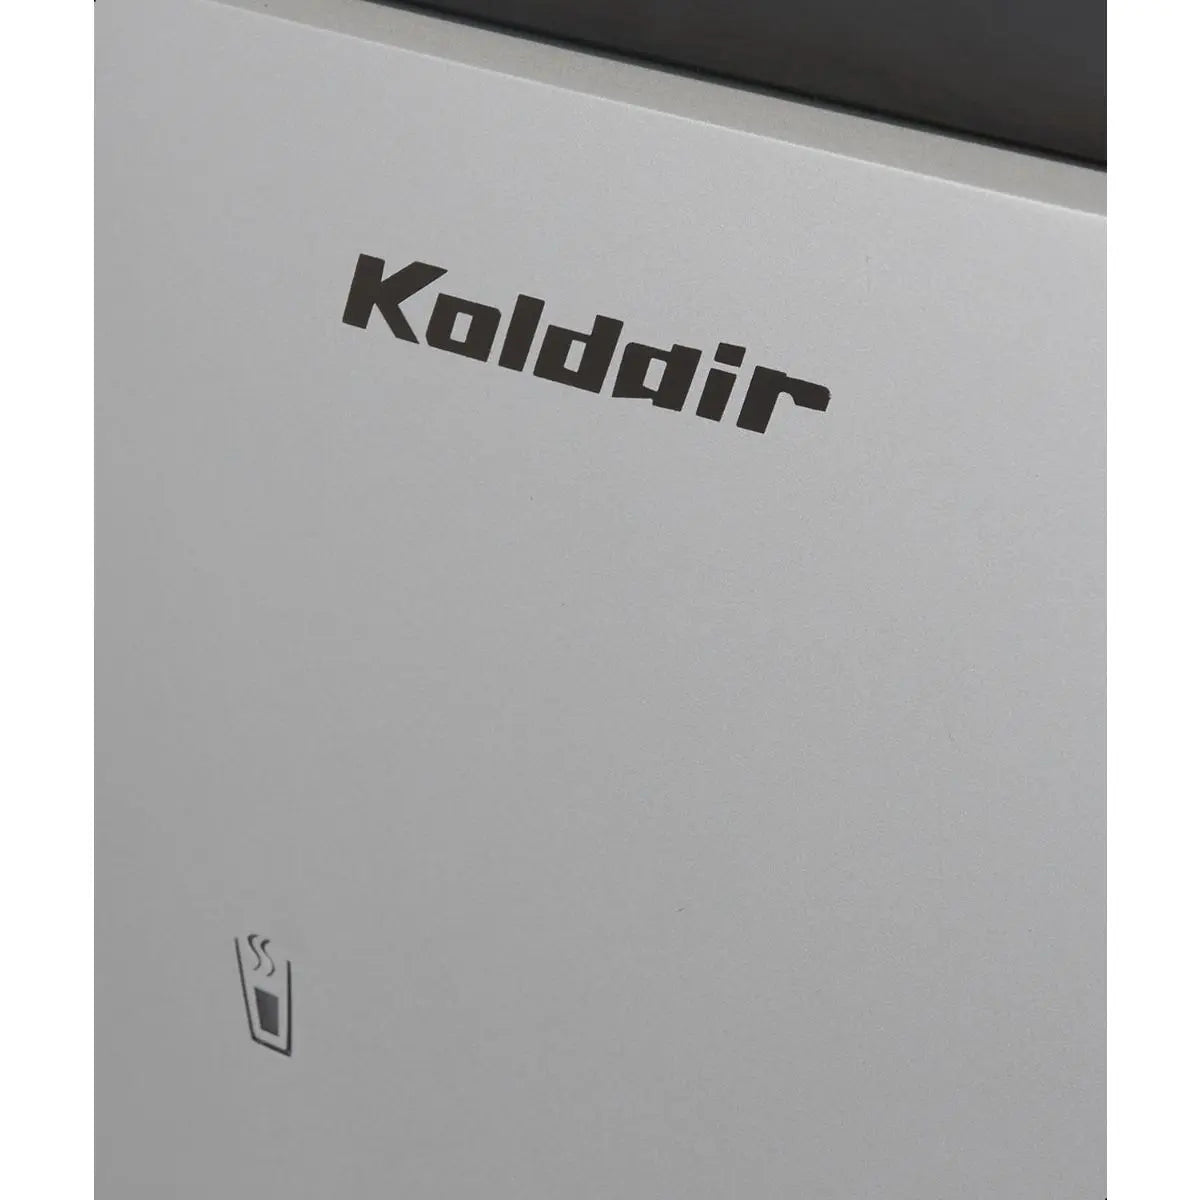 Koldair Hot & Cold Water Dispenser, Black - B3.1